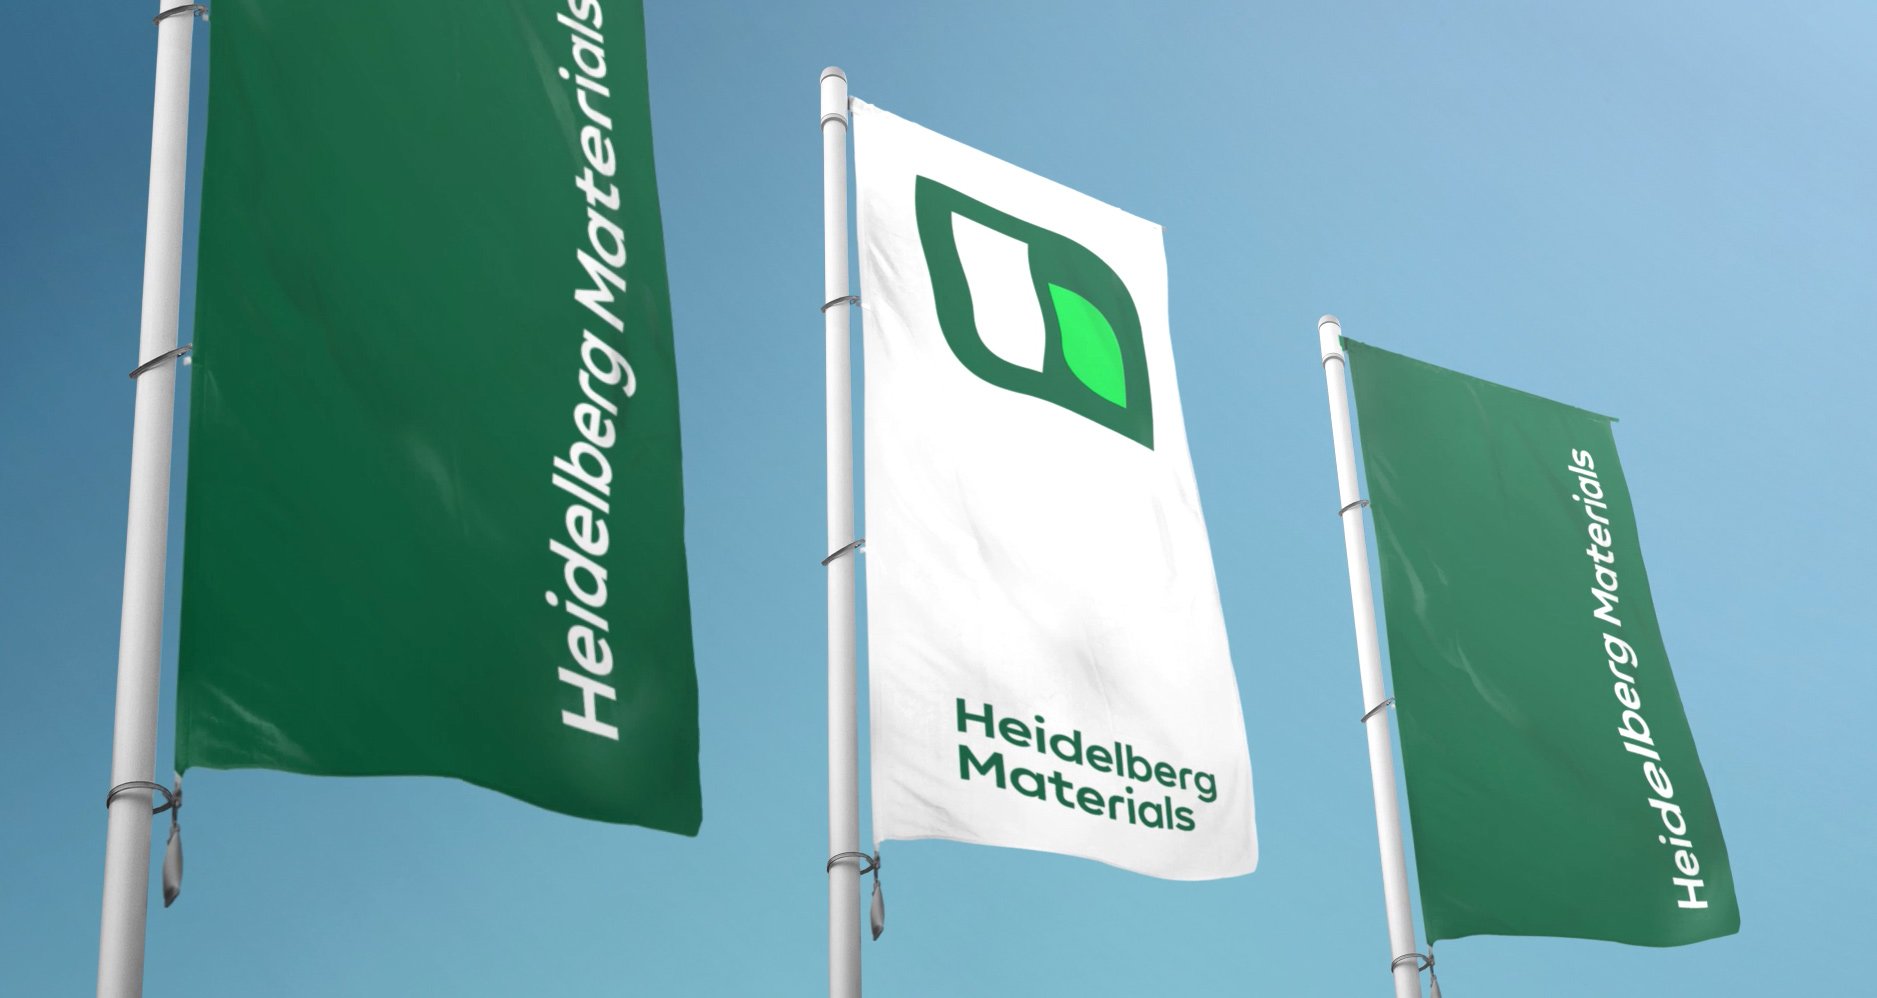 Drei Fahnen im Wind mit dem Heidelberg Materials-Logo darauf